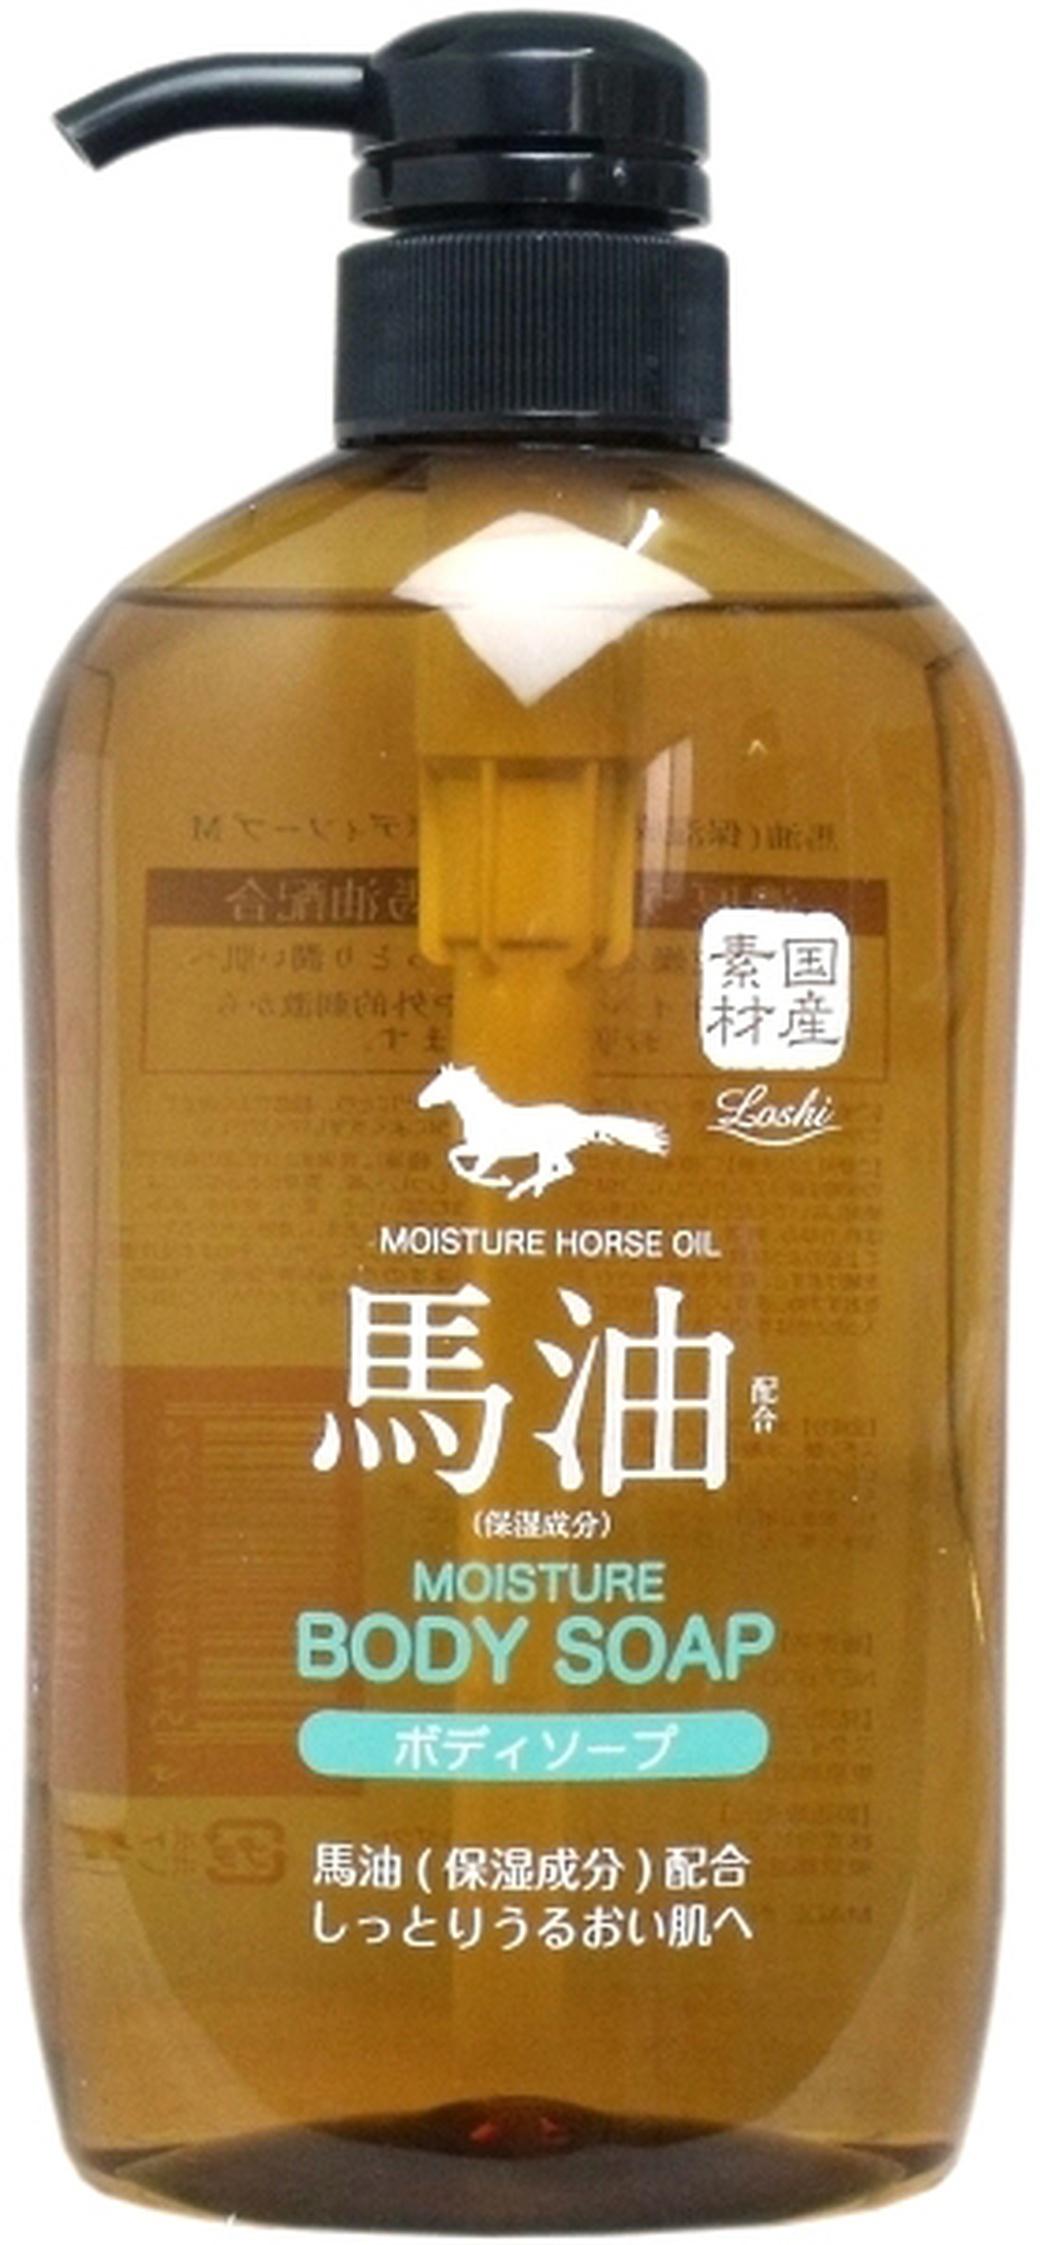 Cosmetex Roland "Moisture Horse Oil" Гель для душа, увлажняющий, с лошадиным жиром, 600 мл фото